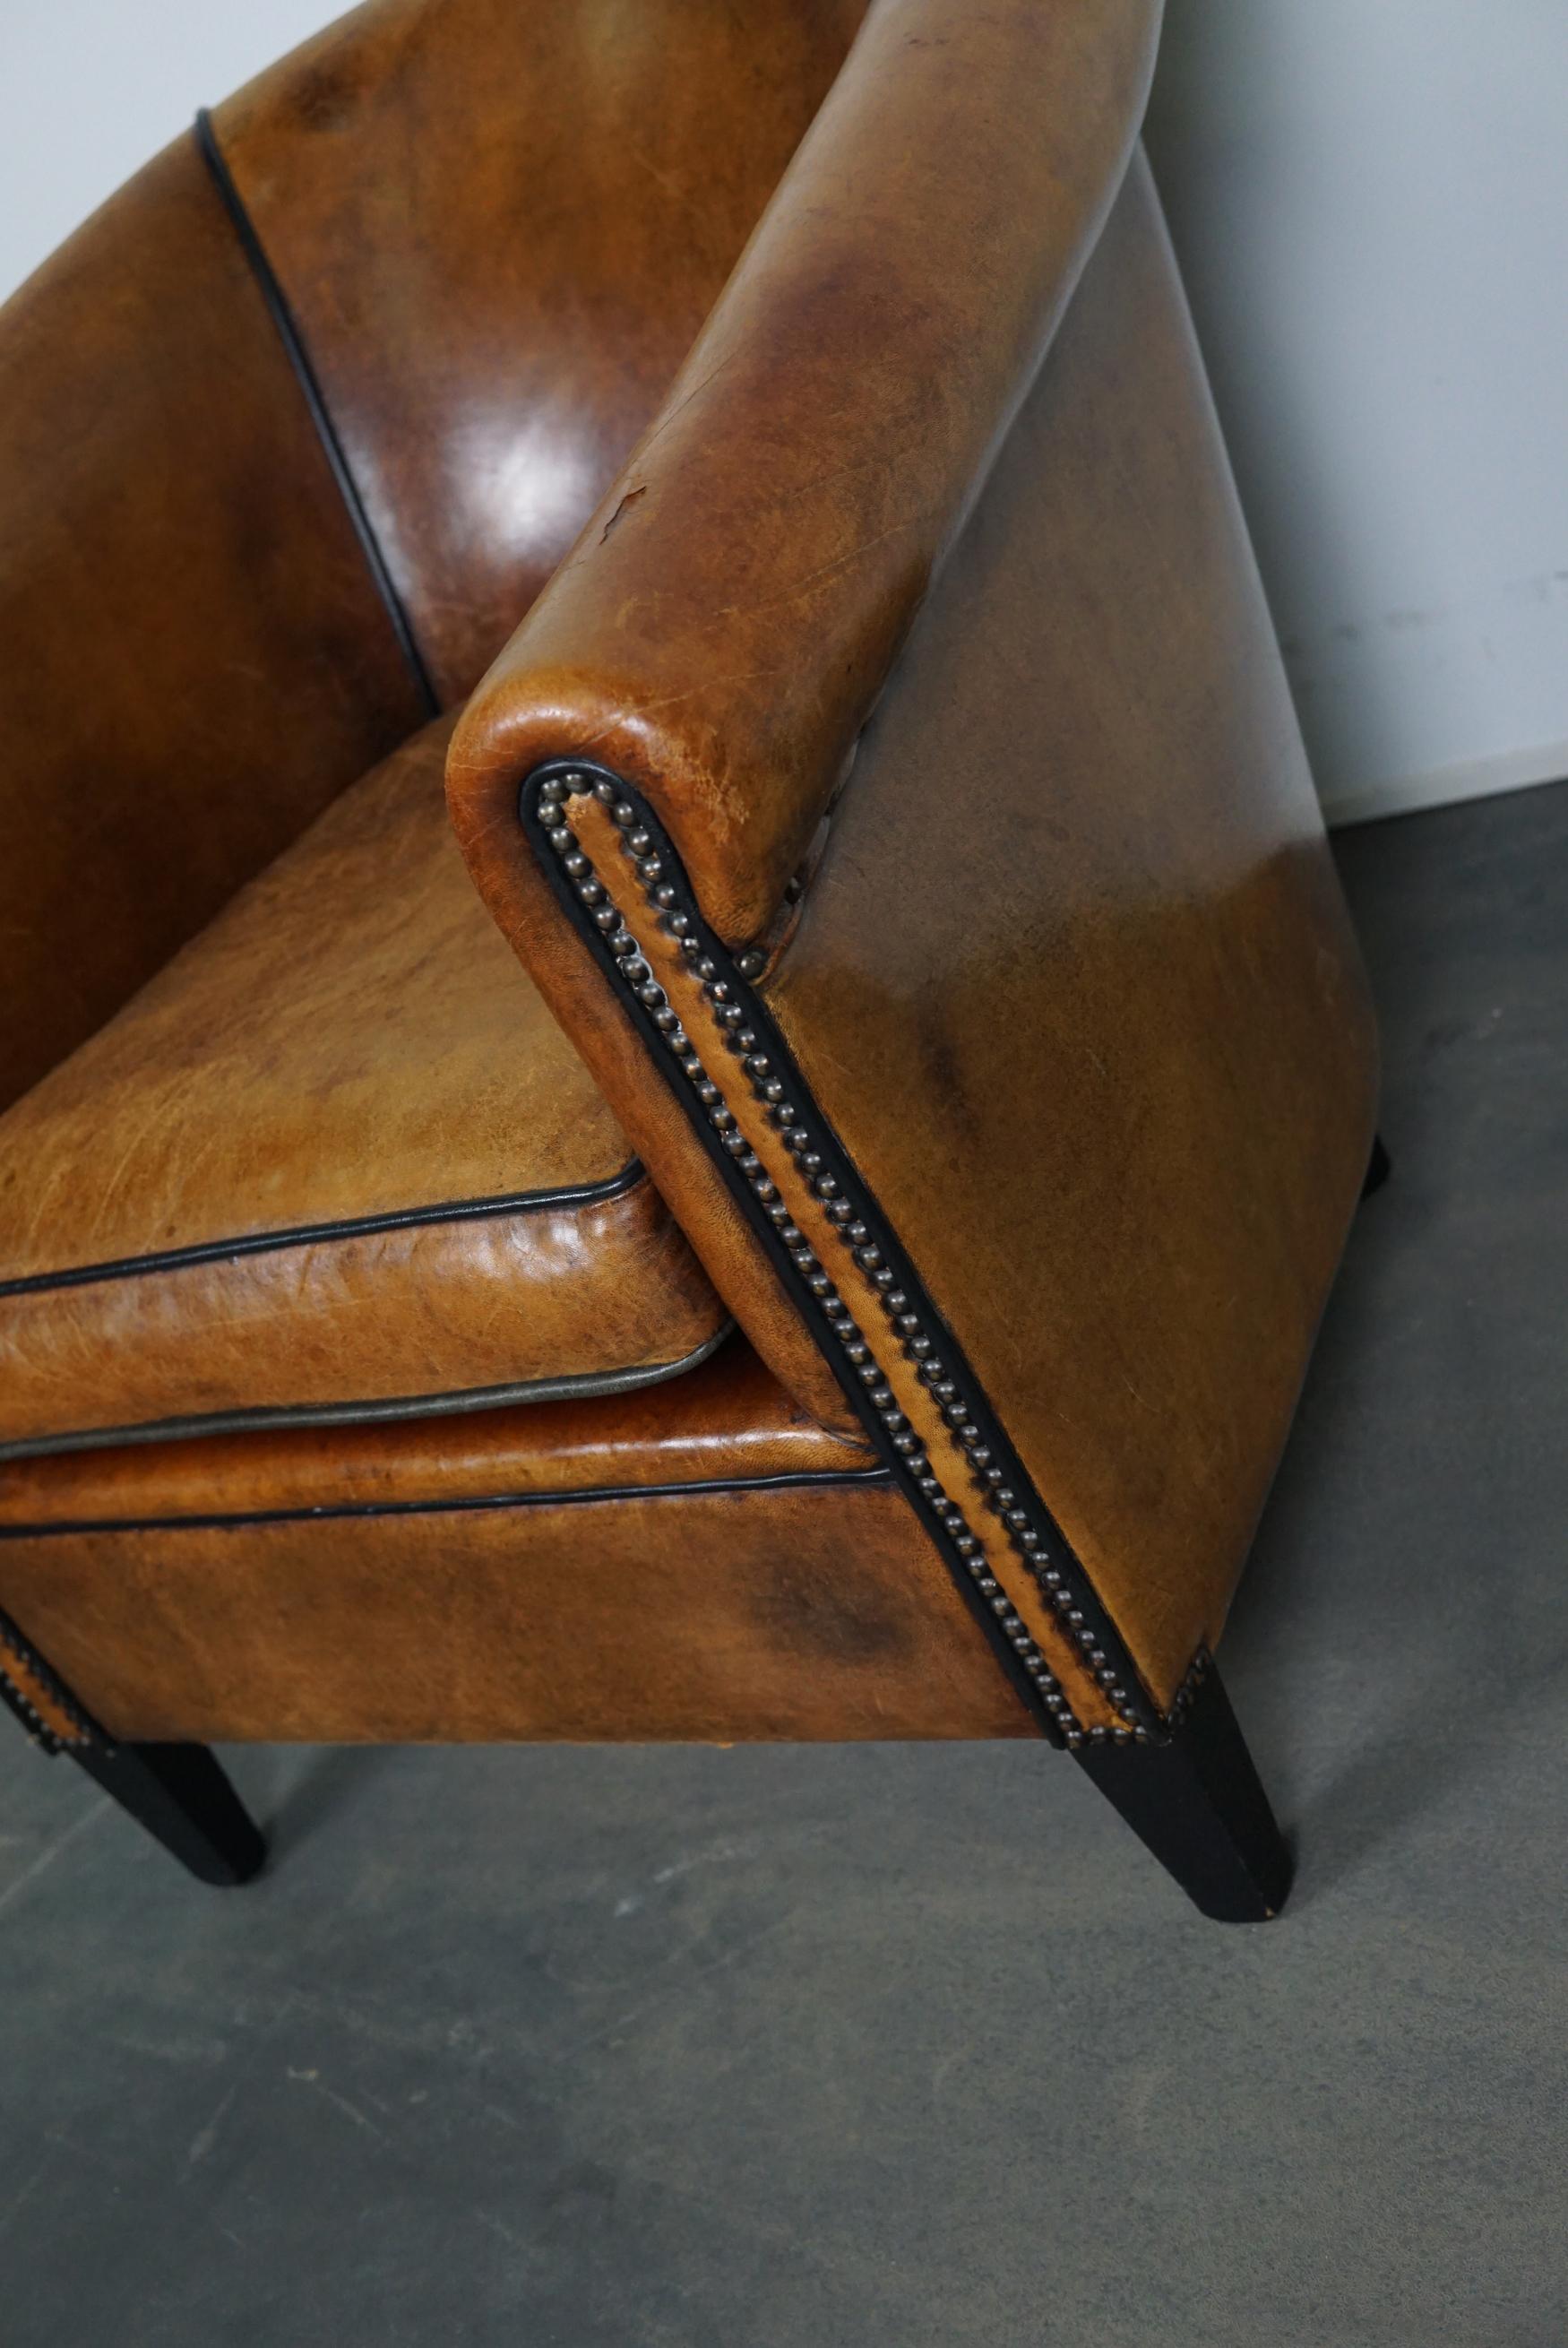 Vintage Dutch Cognac-Colored Leather Club Chair 1